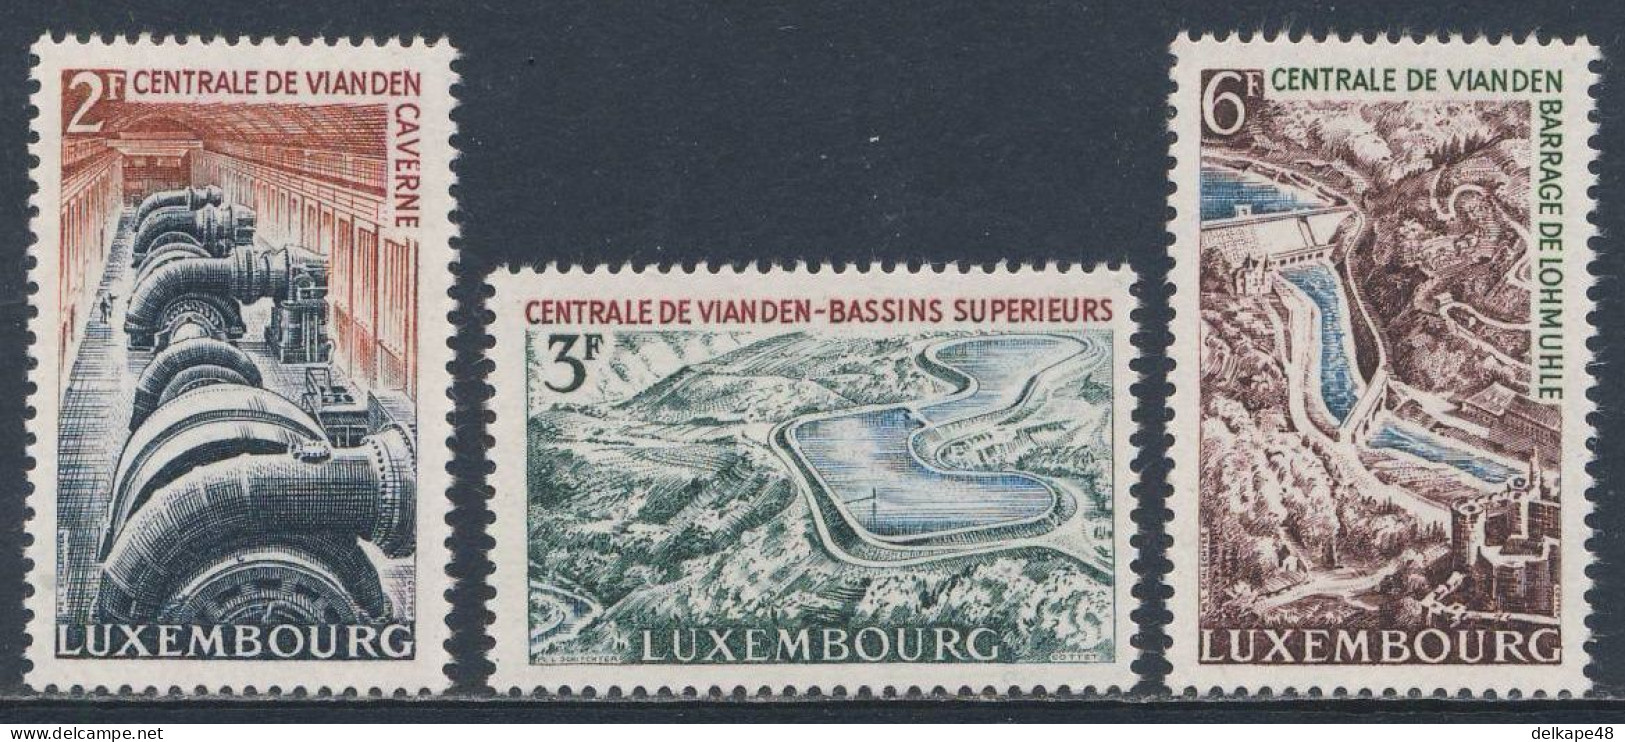 Luxemburg Luxembourg 1964 Mi 693 /5 YT 644 /6 SG 740 /2 ** Inaug. Vianden Reservoir / Pumpspeicherwerkes Vianden - Agua